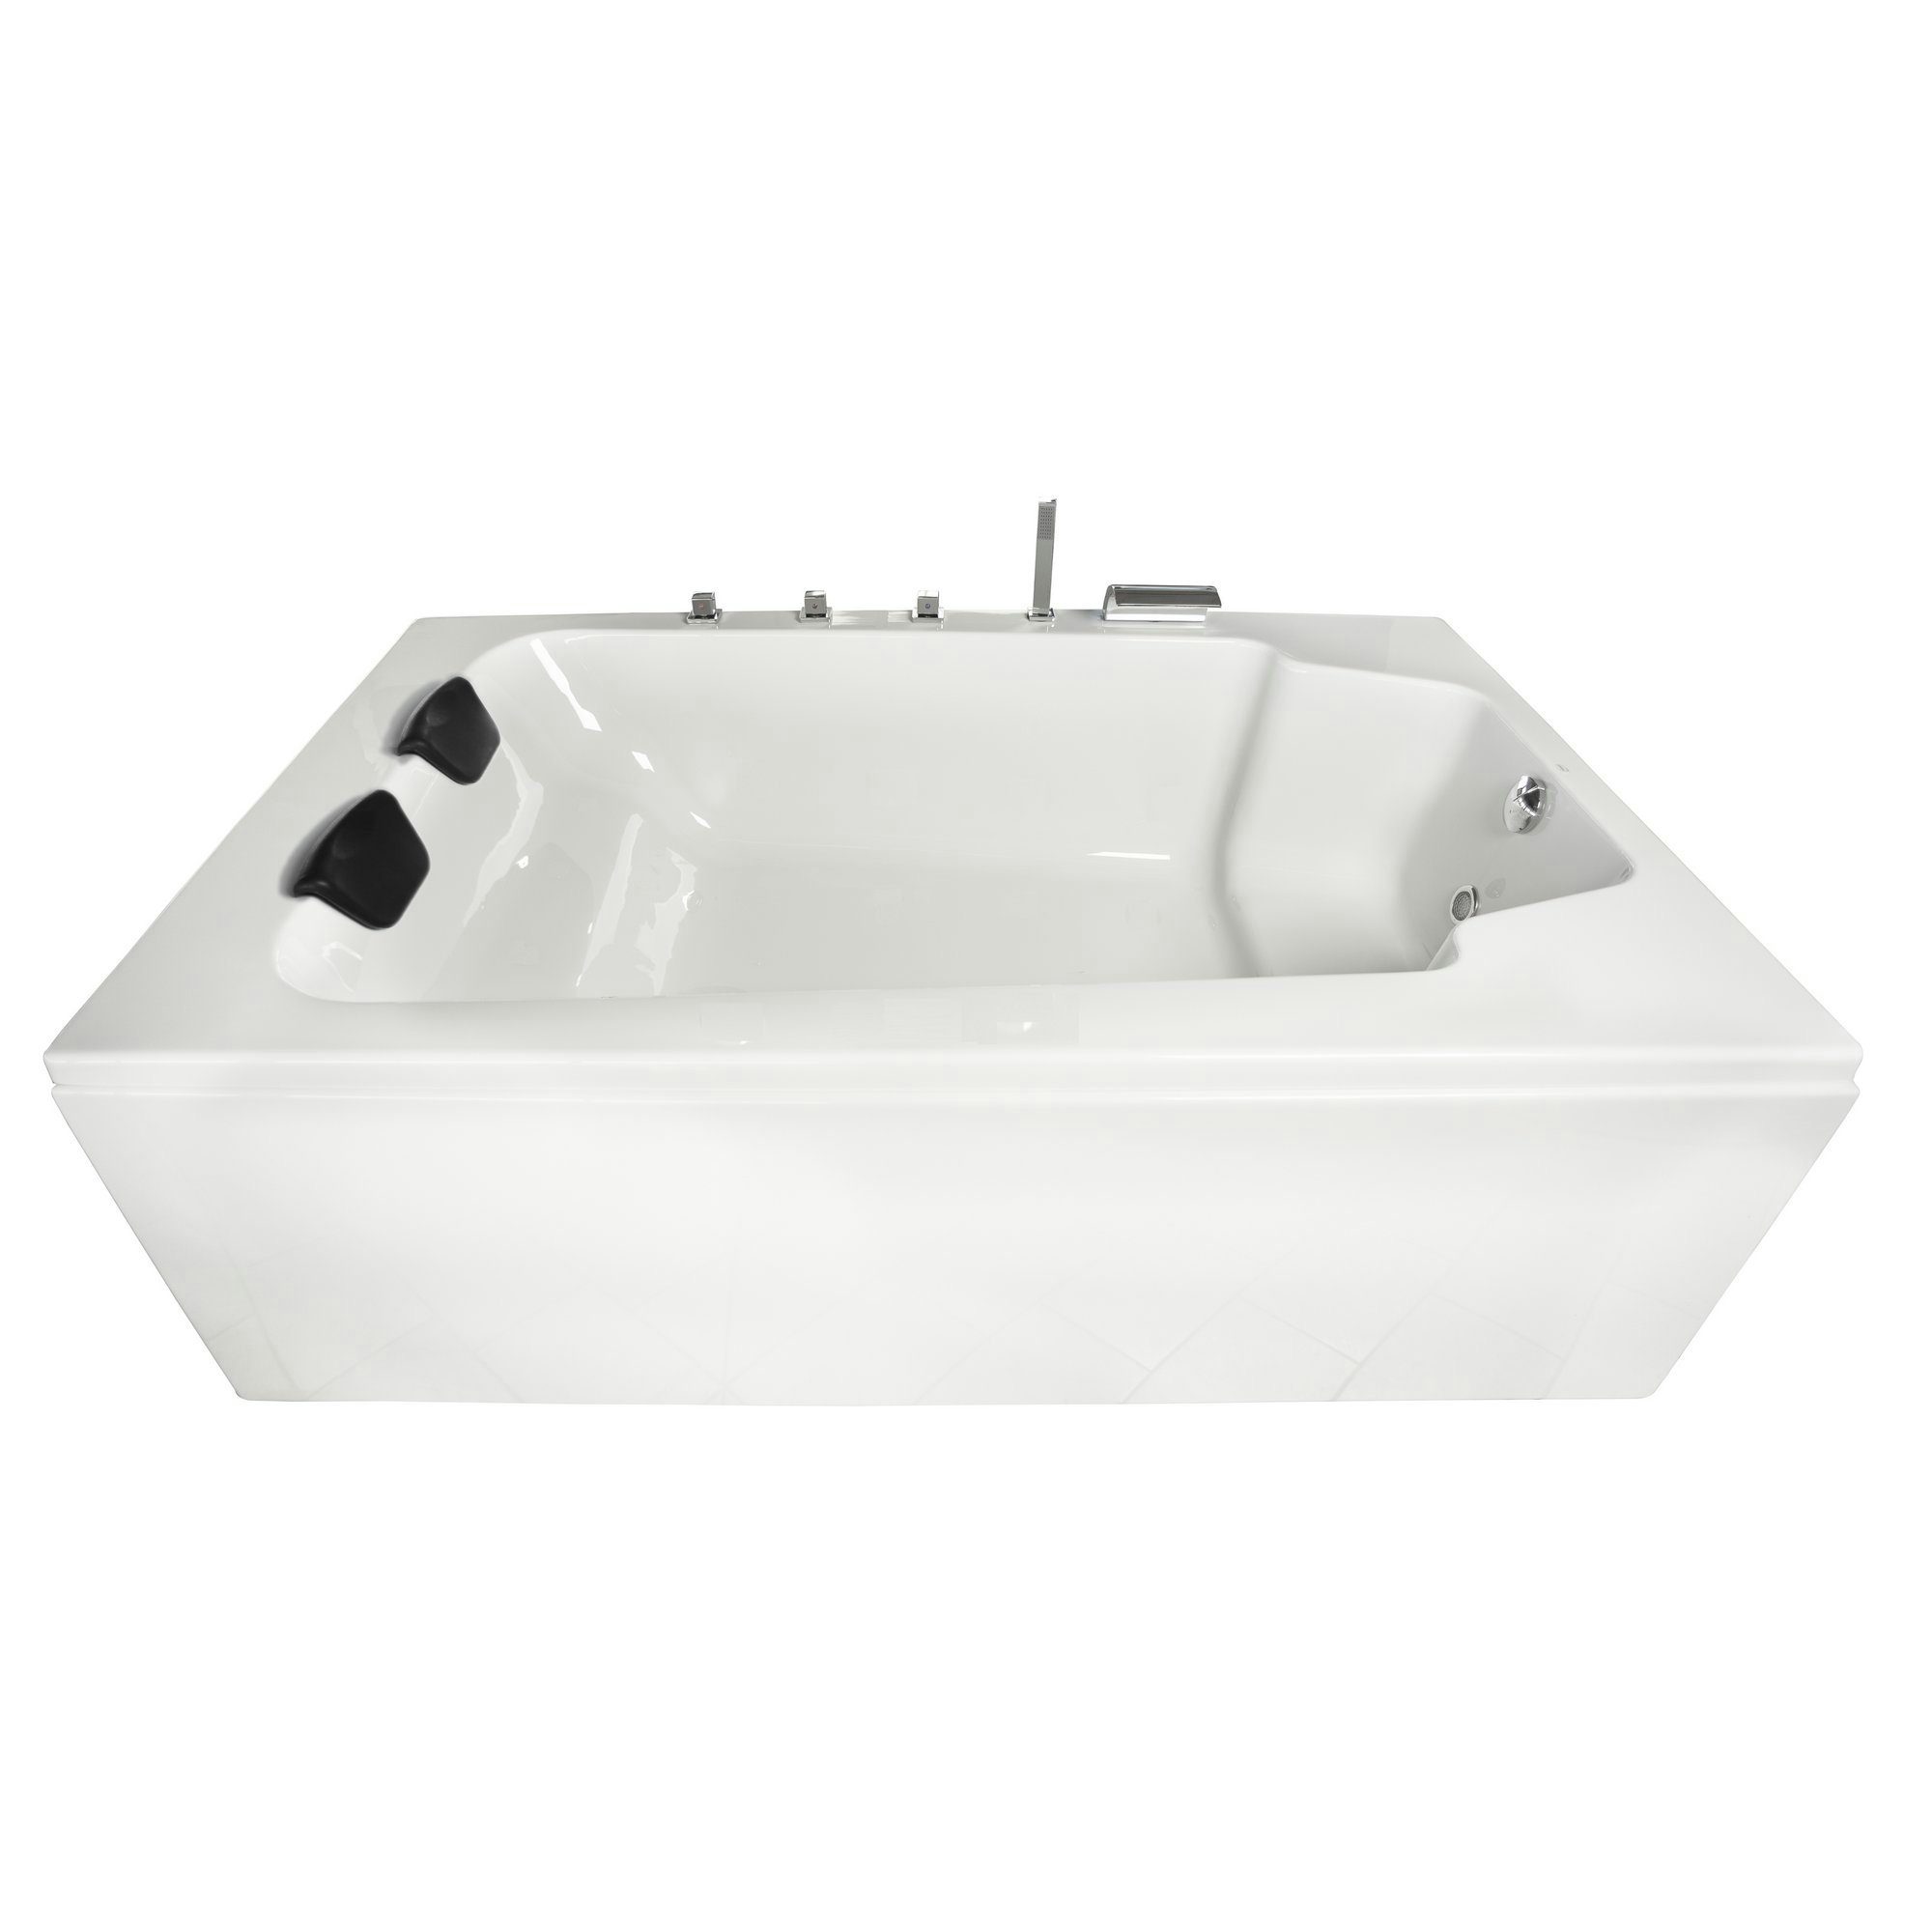 Basera® Badewanne Badewanne XXL Milos 190 x 120 cm für 2 Personen, (Komplett-Set), mit Wasserfall, LED und Kopfstützen